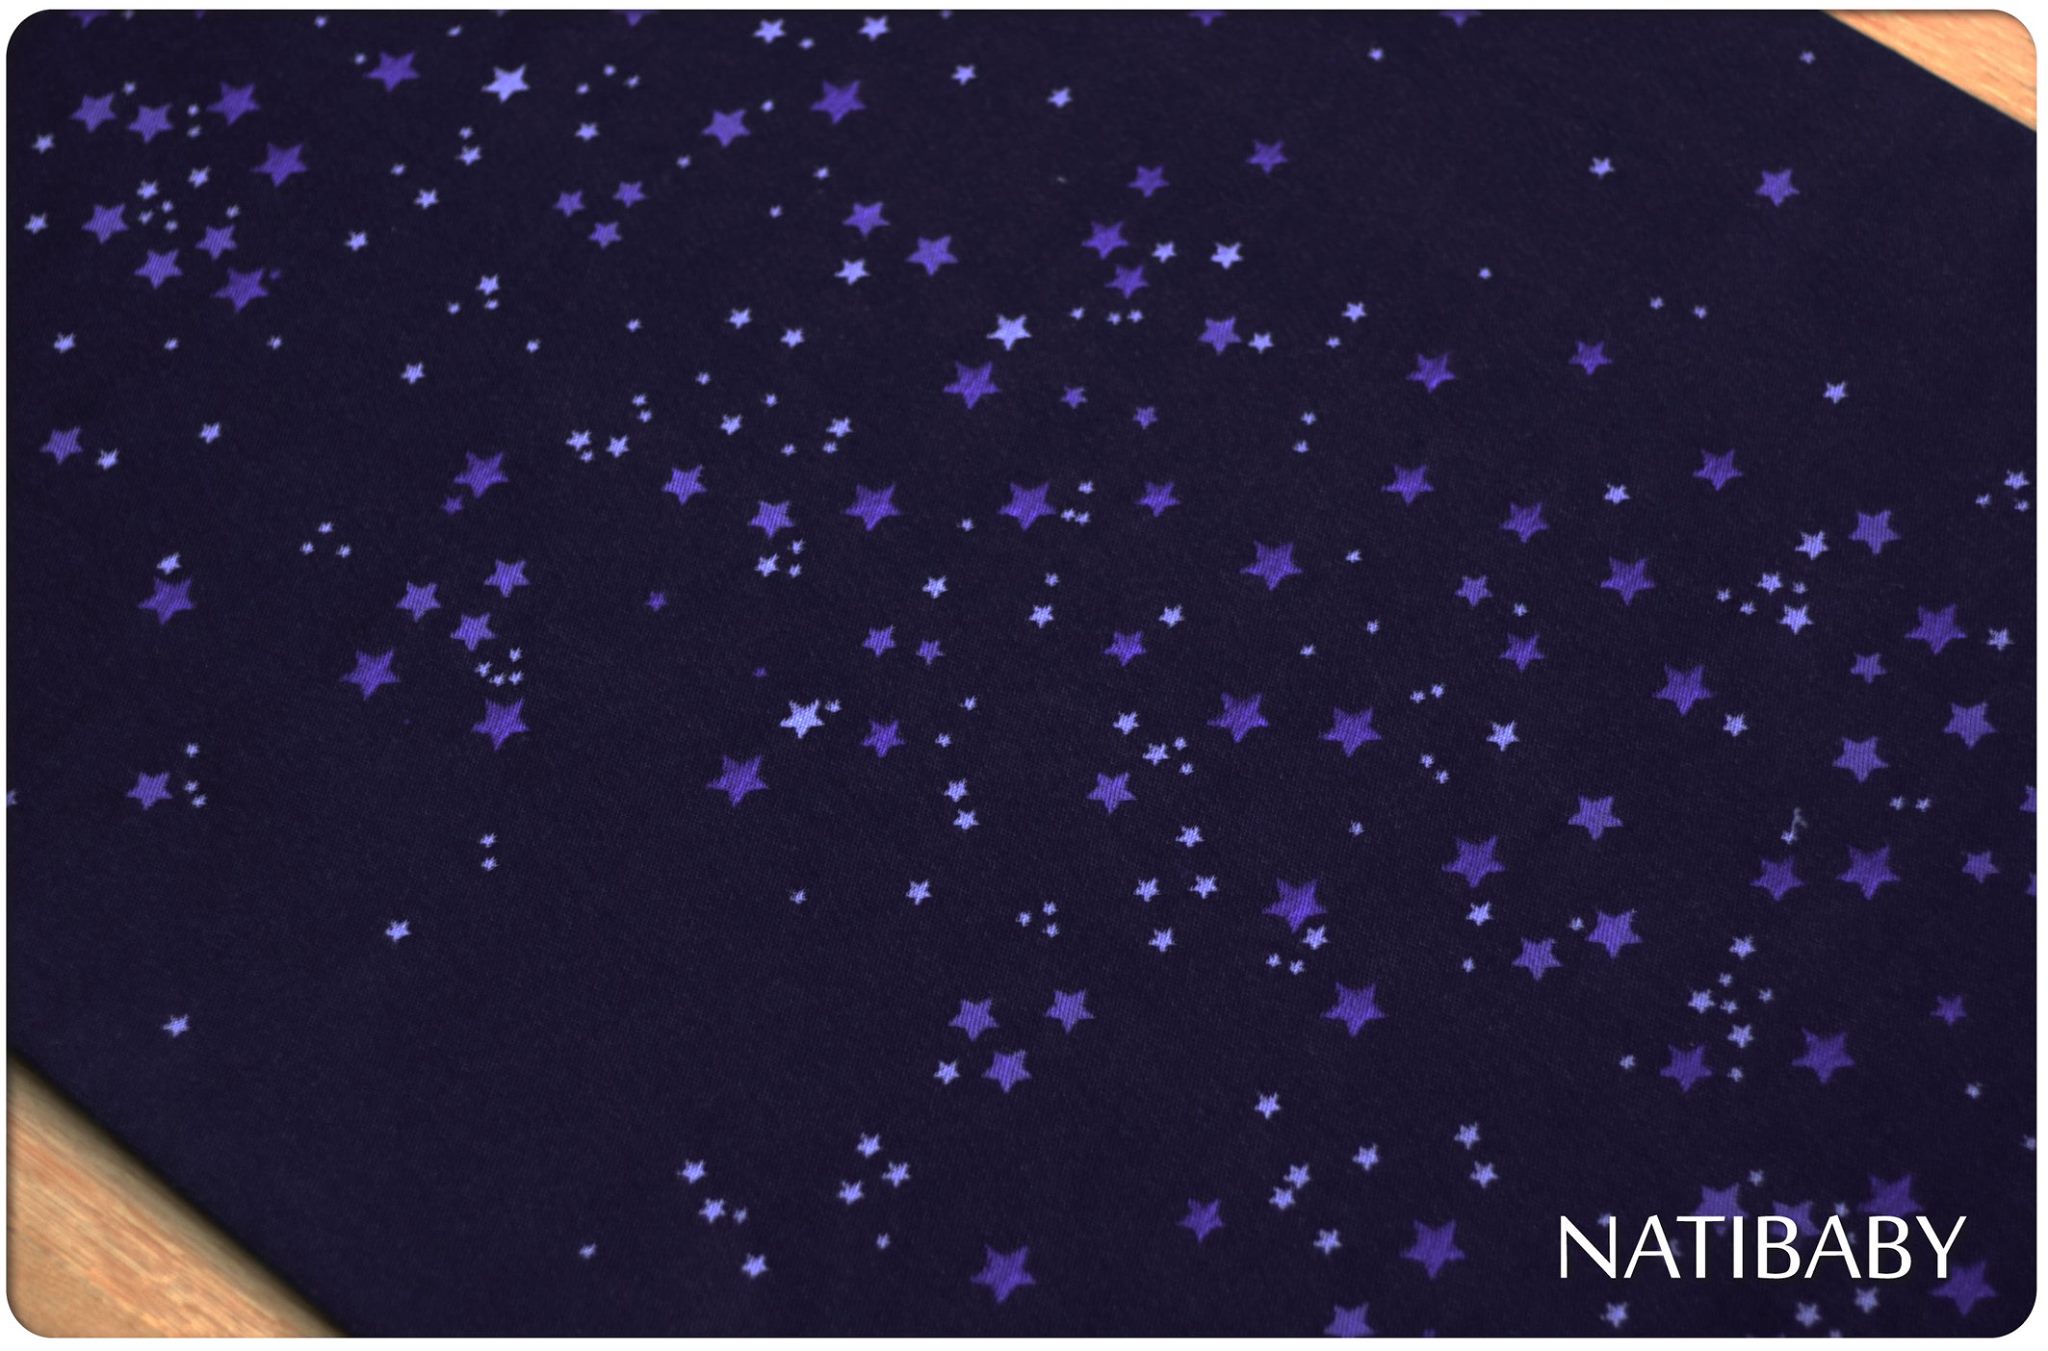 Natibaby Stardust Beautifull Night Wrap (merino, linen) Image